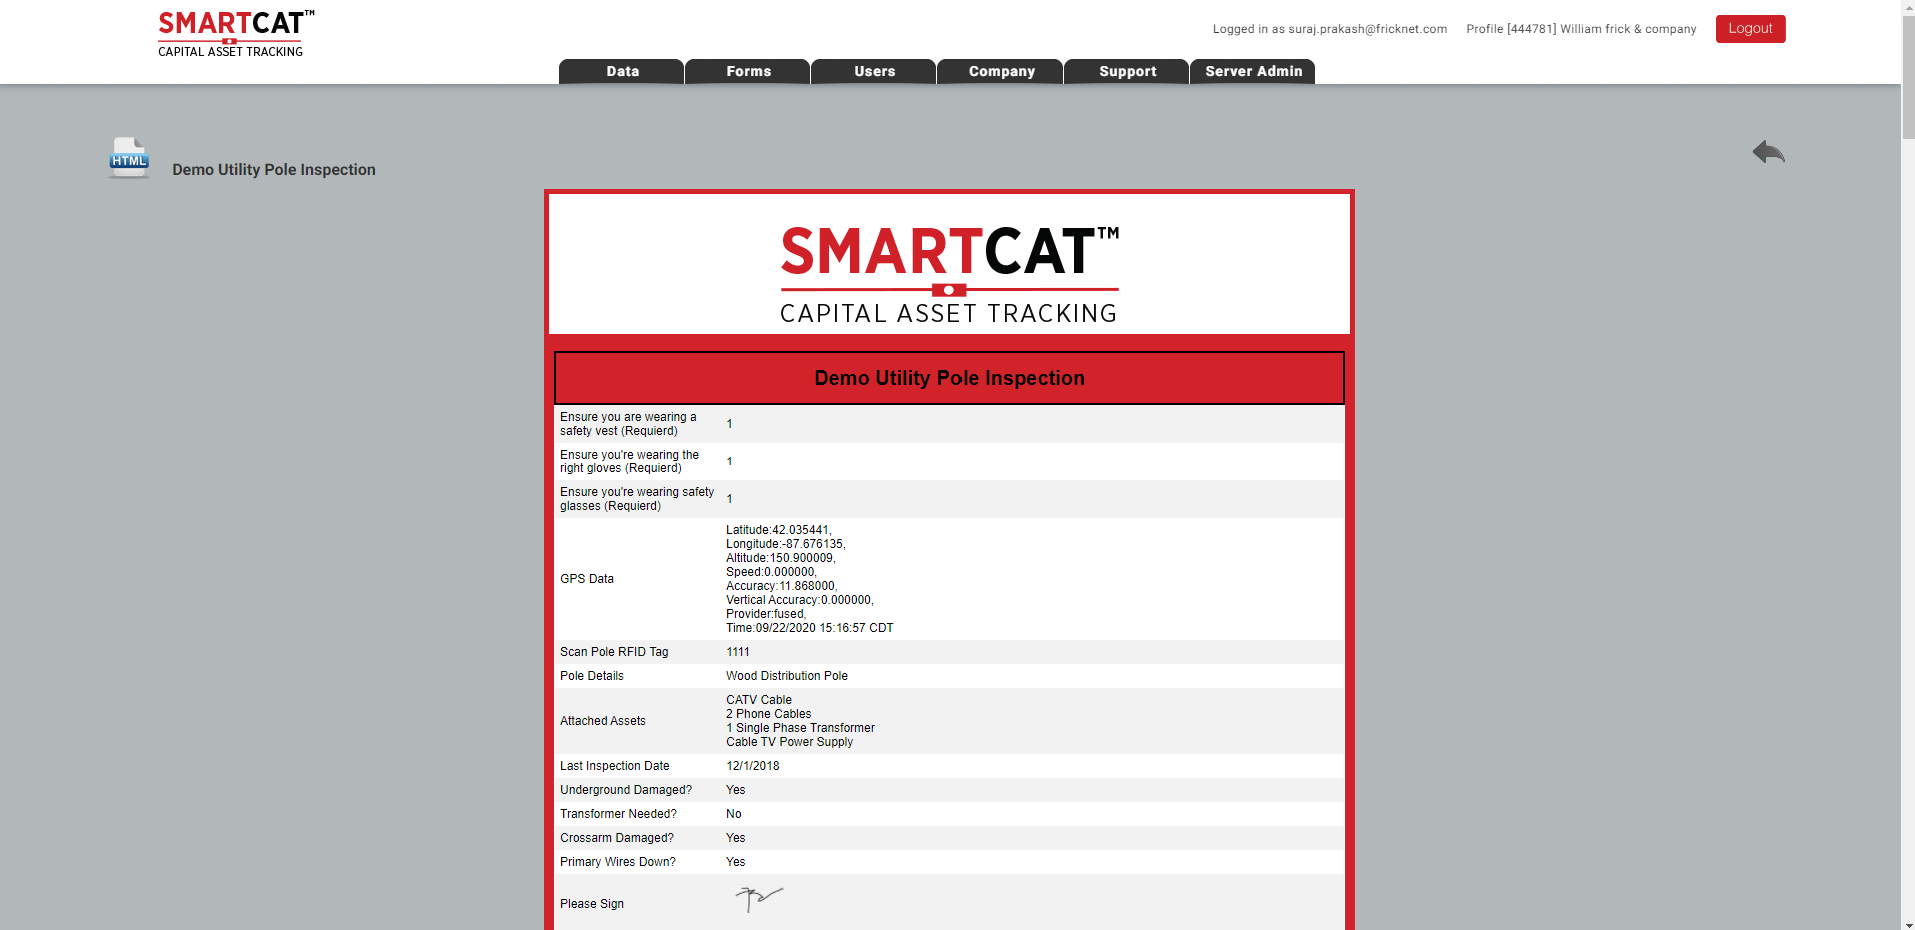 Smartcat ee055fdd-7ee4-4a2a-a8da-6d8501d9fd32.png